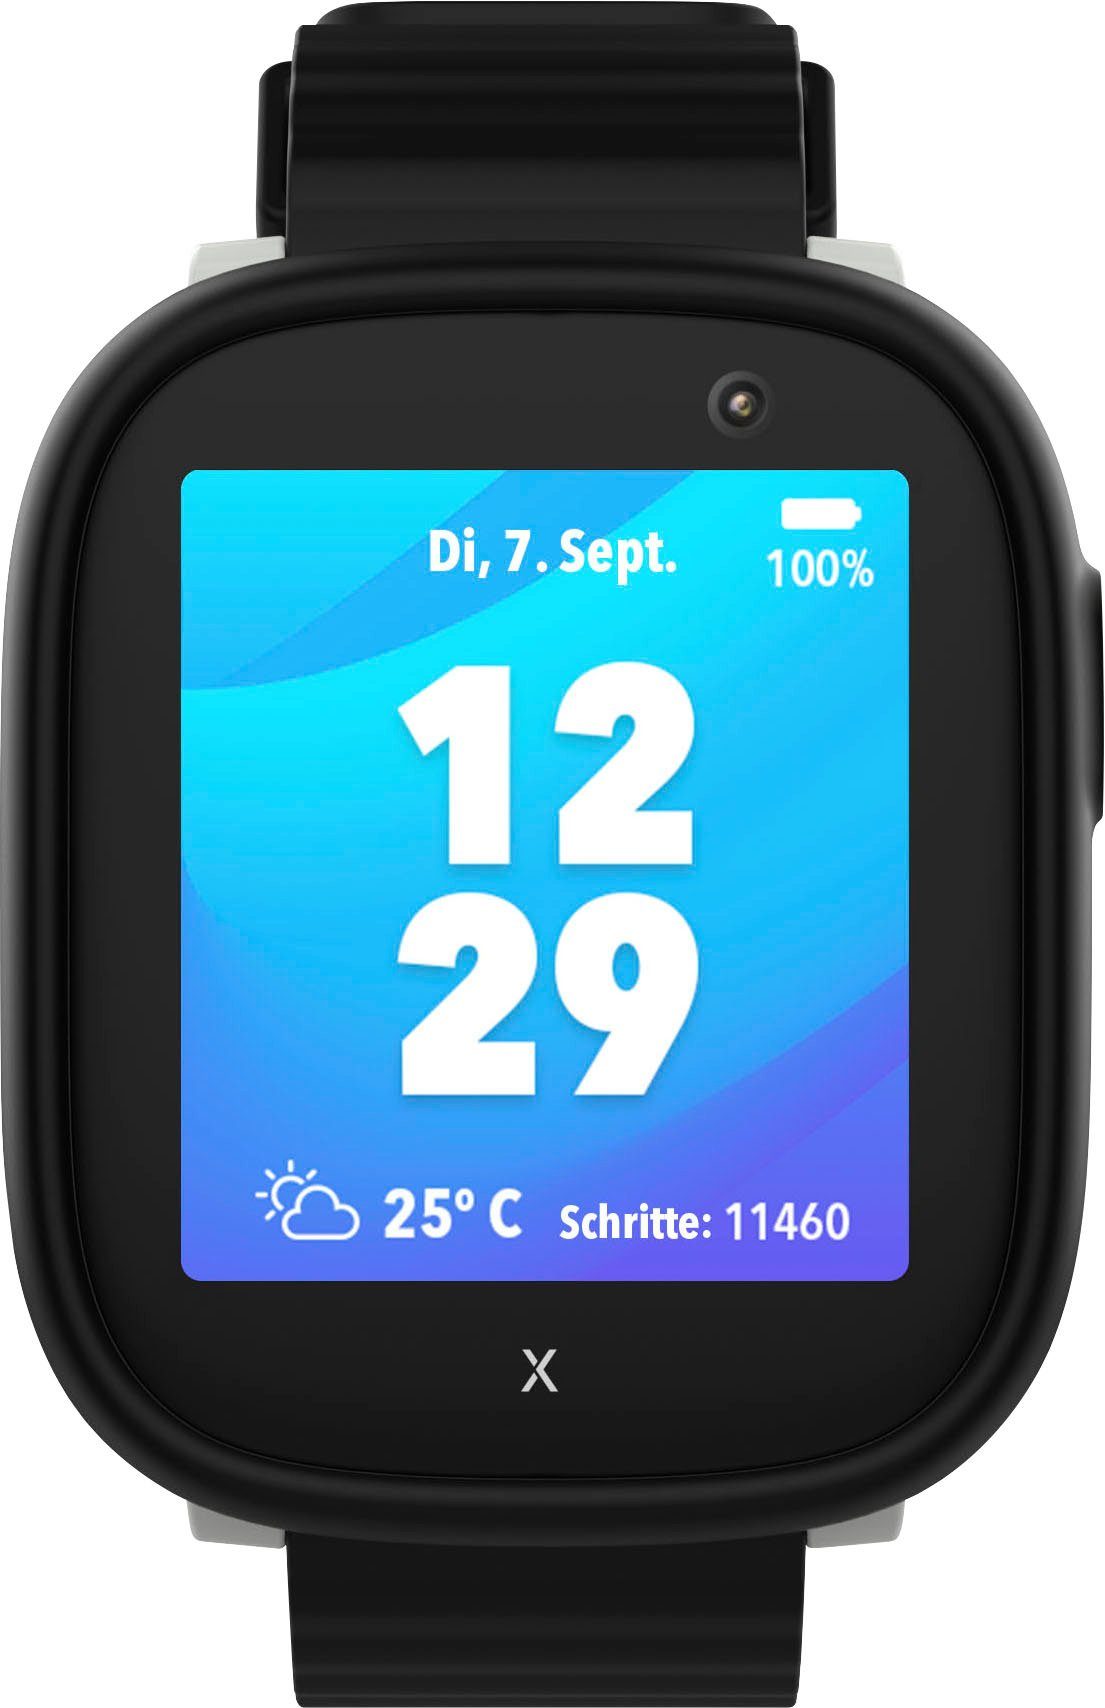 Xplora X6Play Kinder- Smartwatch (3,86 cm/1,52 Zoll, Android Wear) schwarz/schwarz